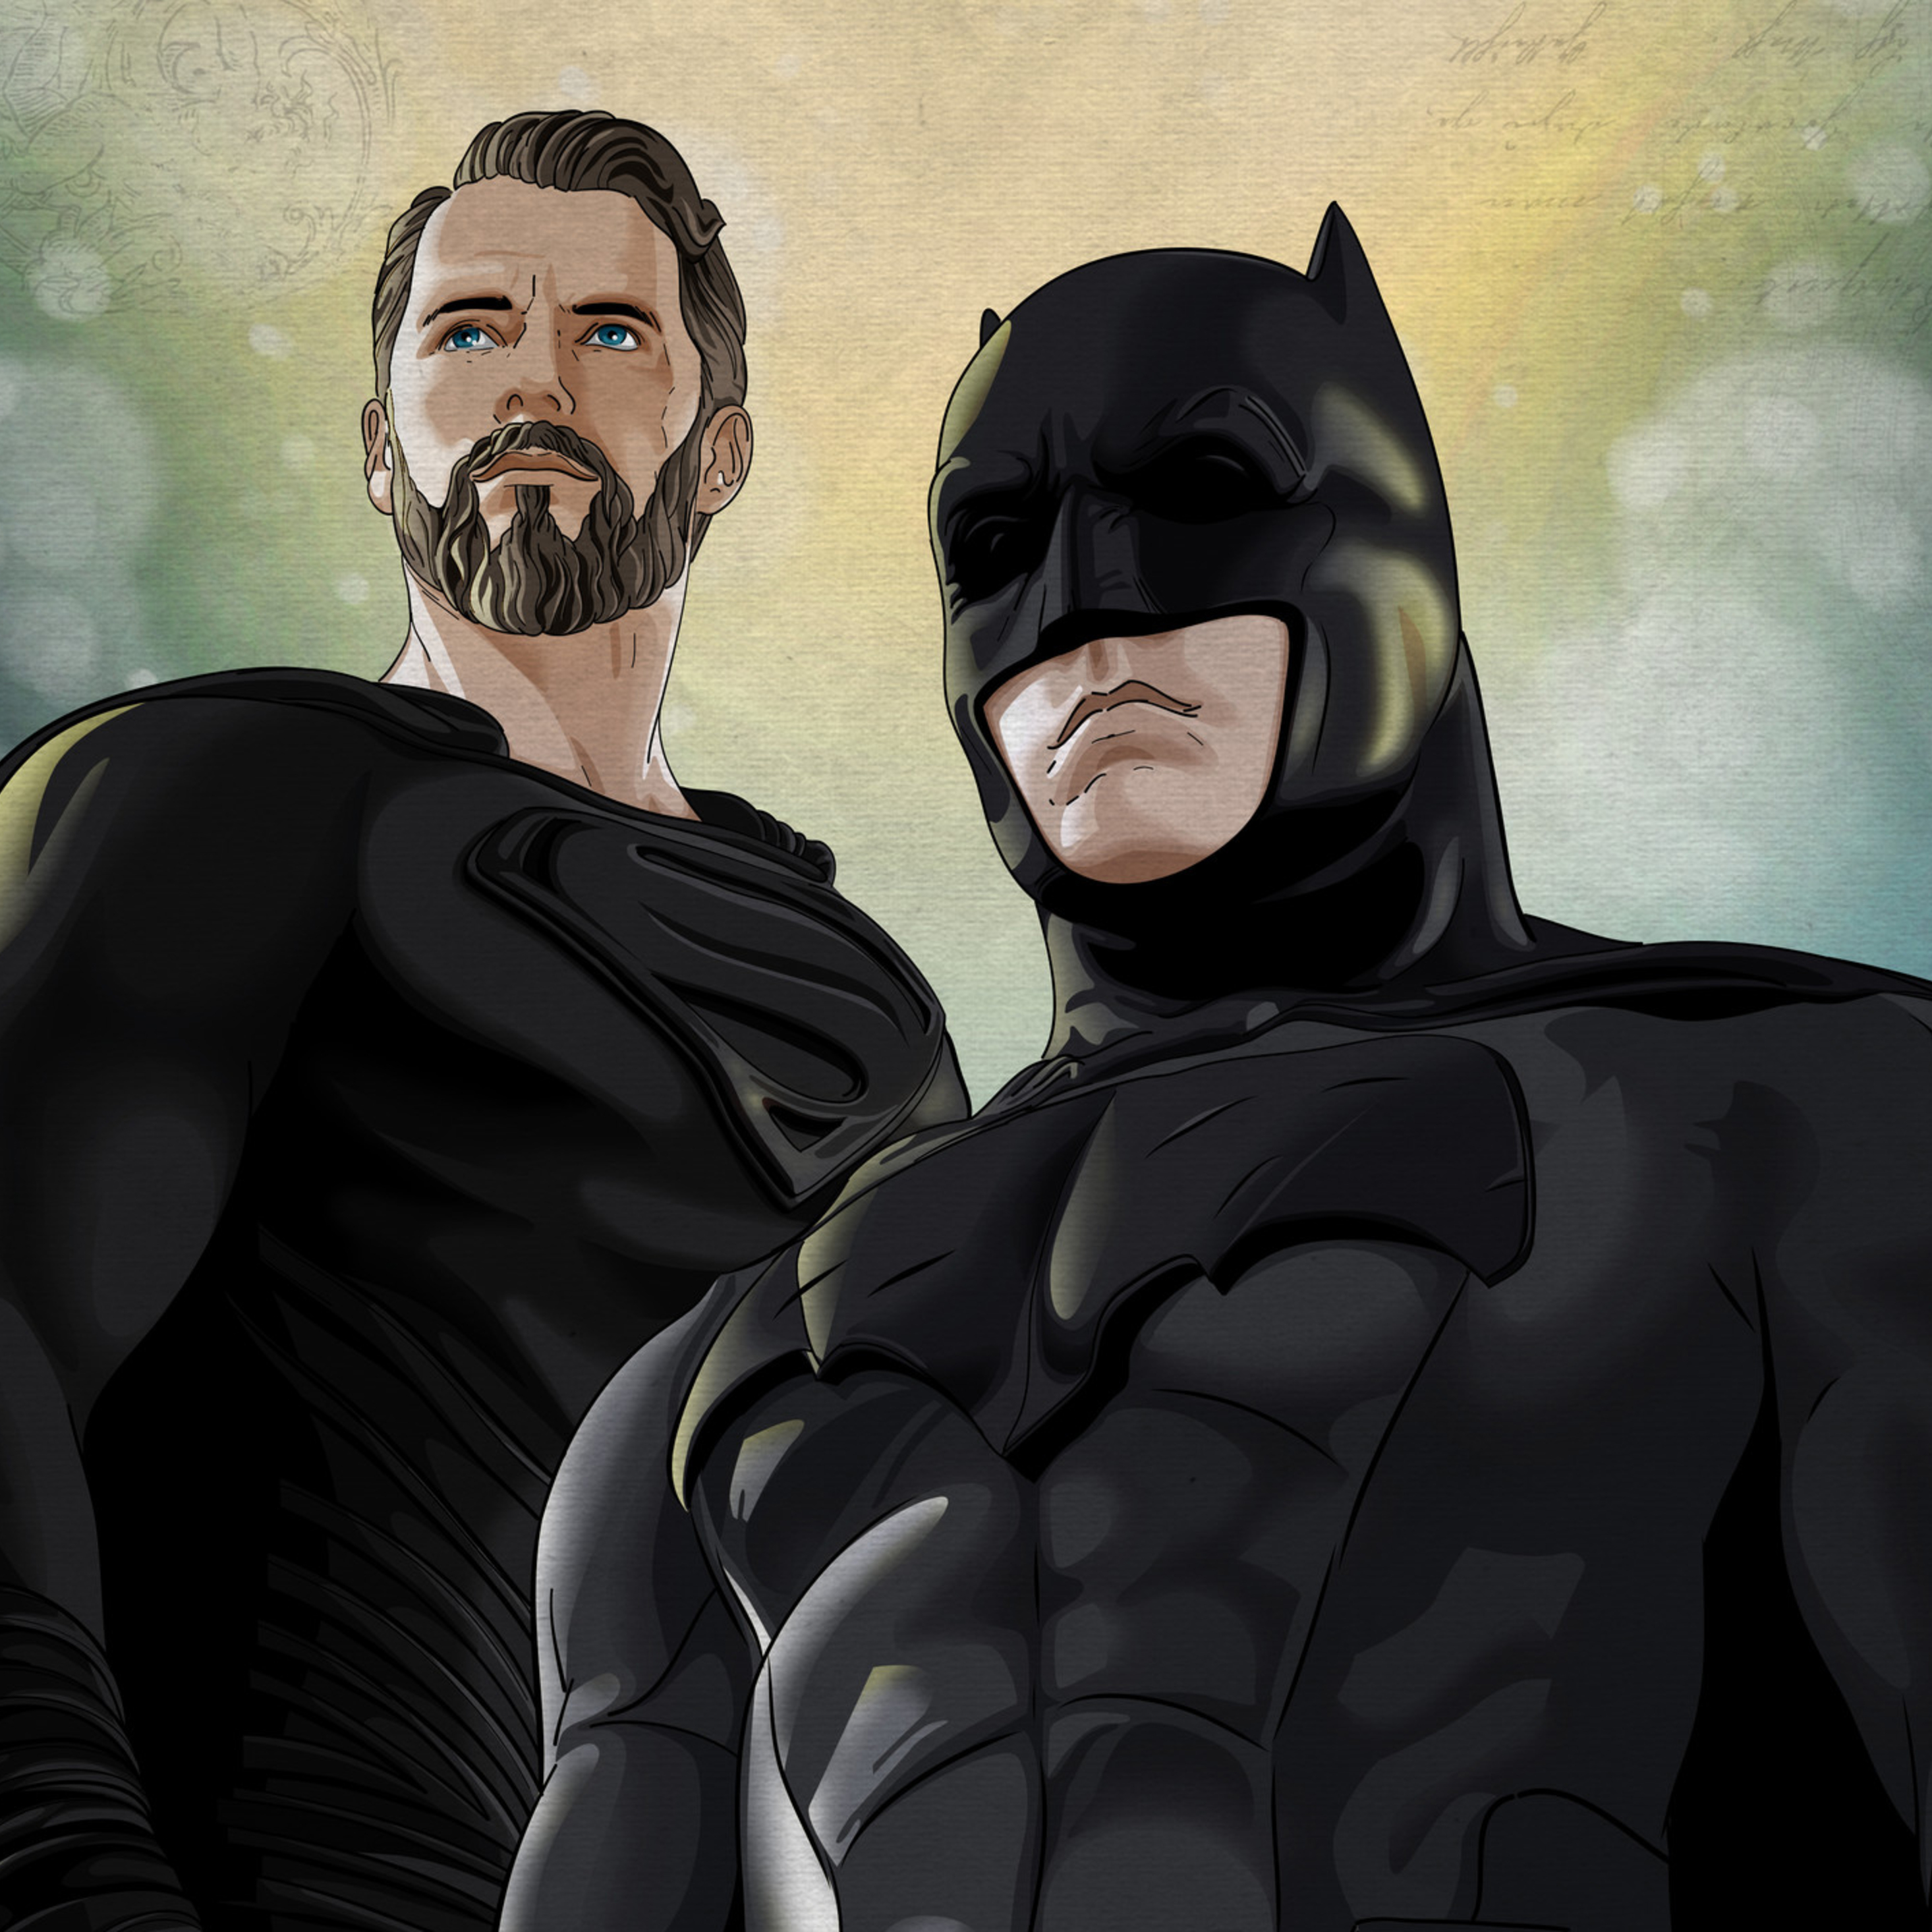 Batman justice league. Бэтмен лига справедливости. Бэтмен с бородой.